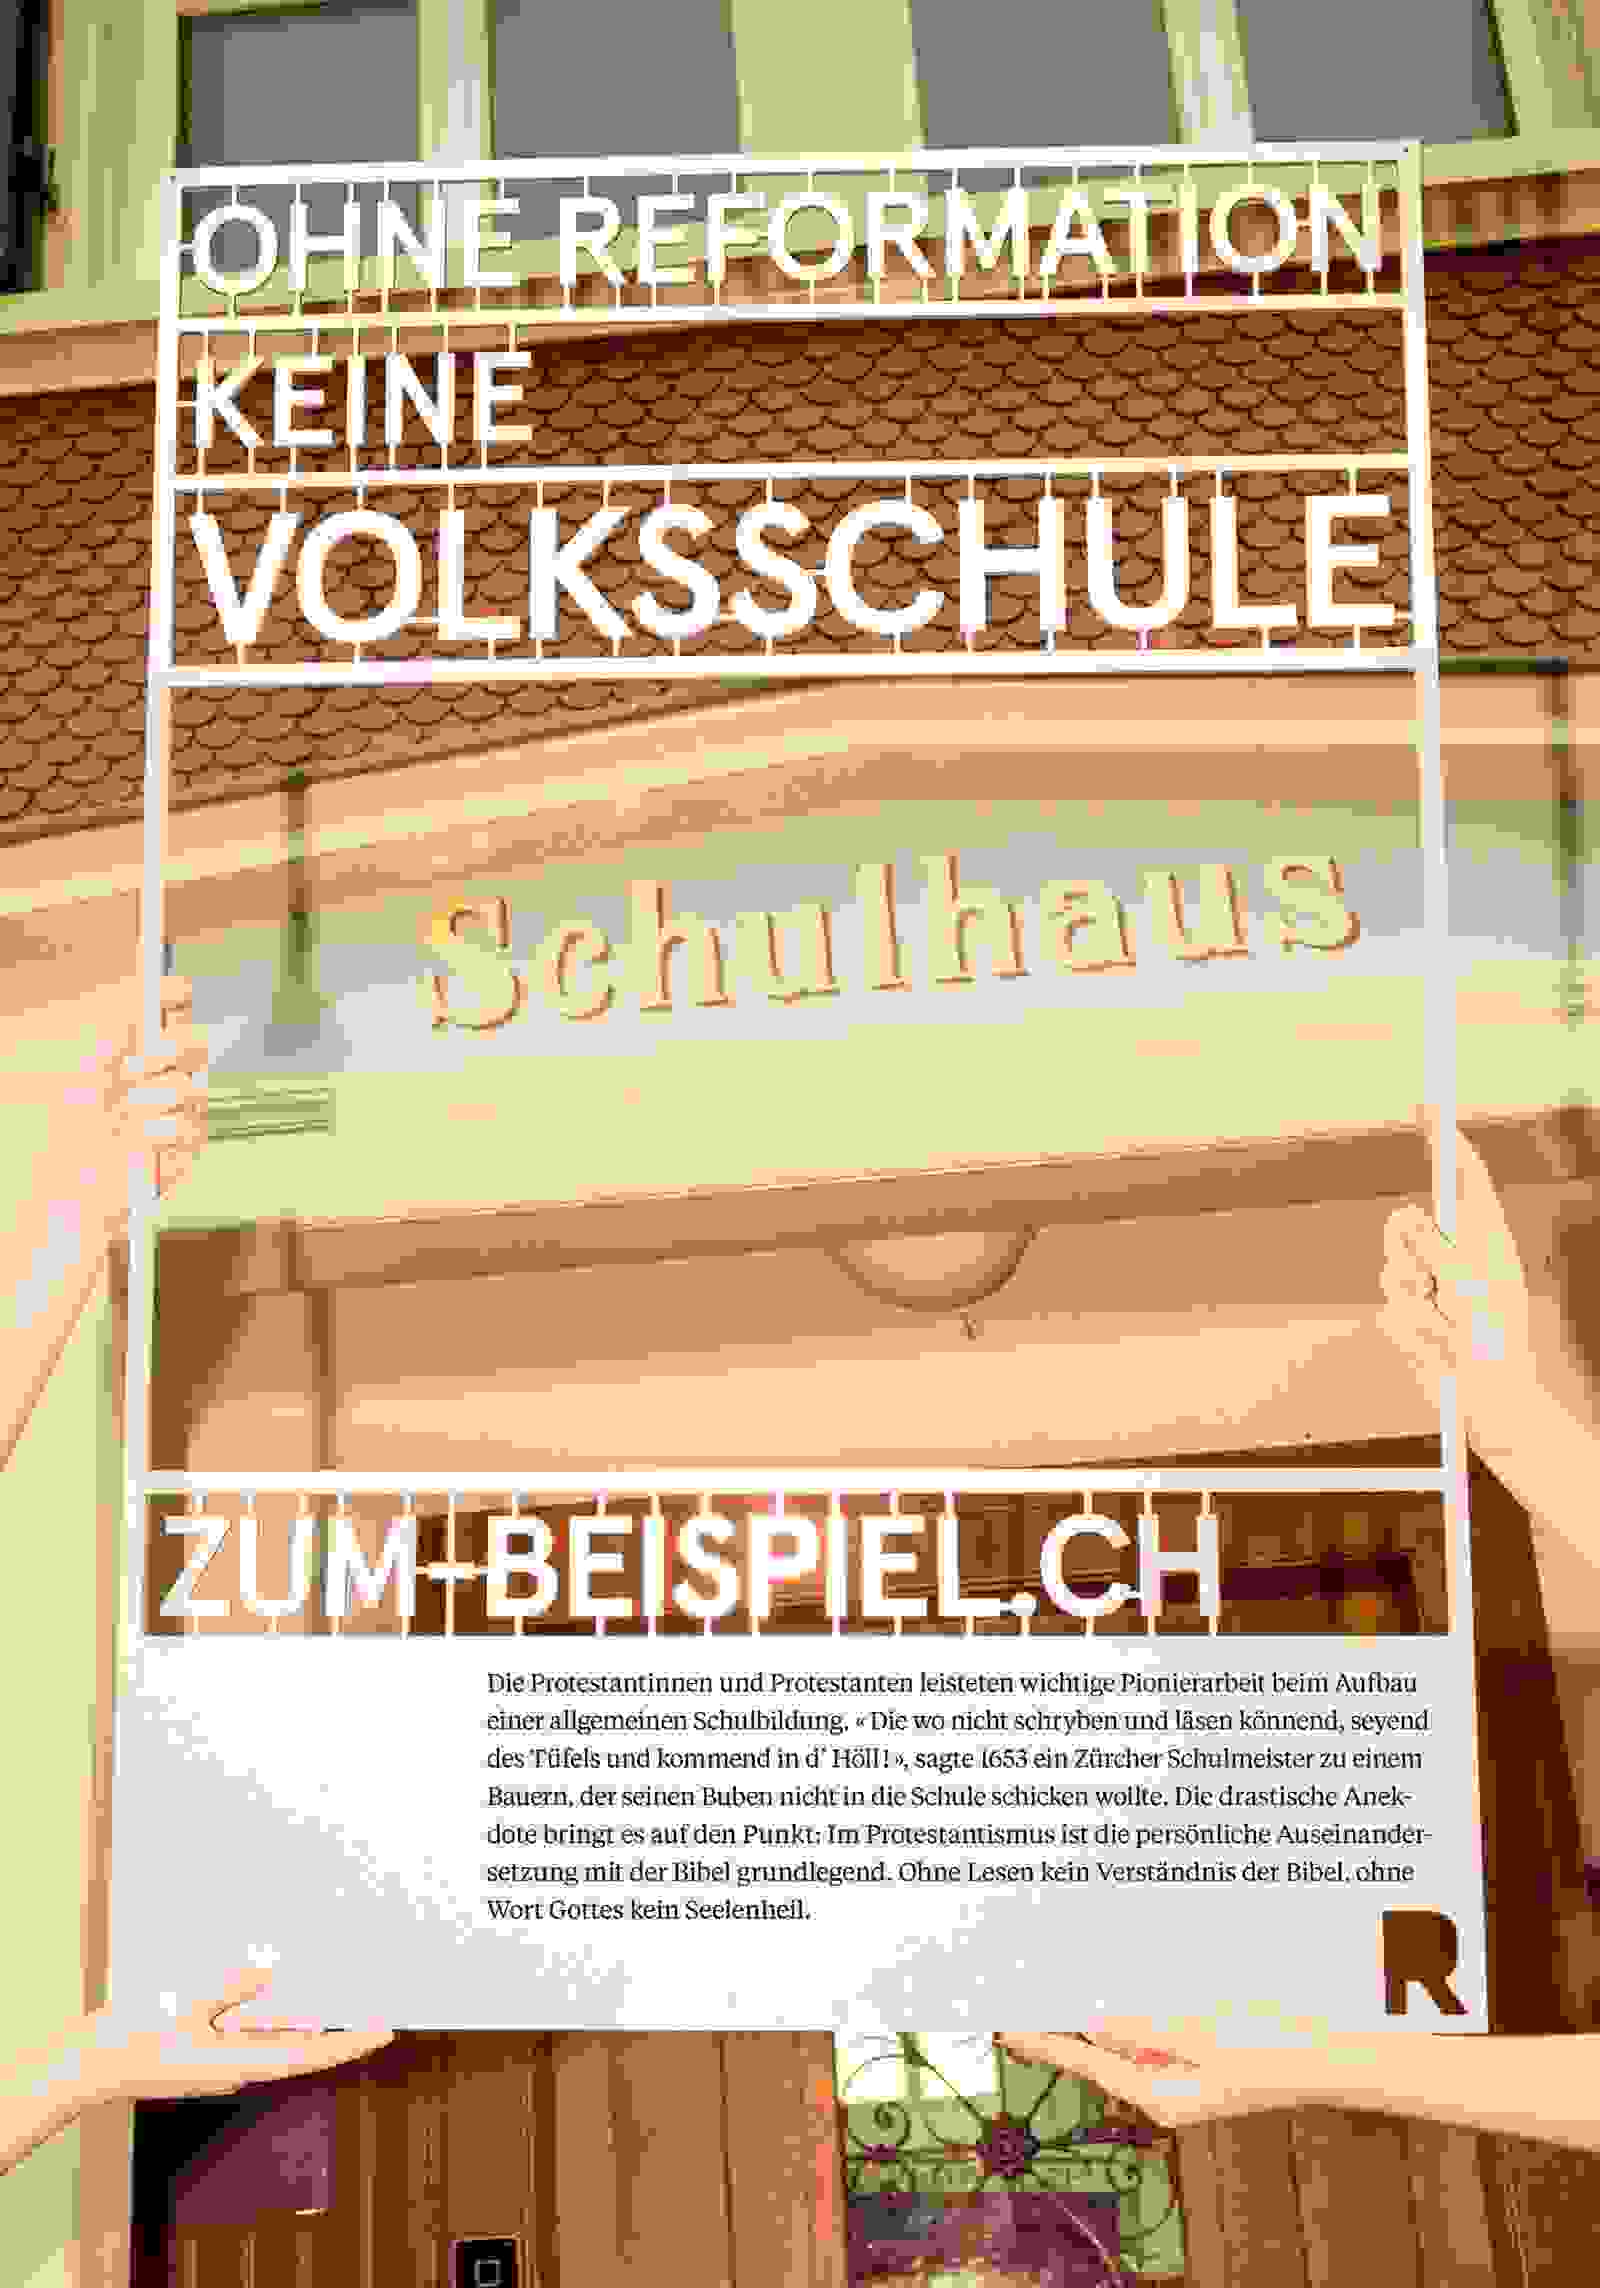 Plakate zum-Beispiel.ch der Evangelisch-reformierten Kirche